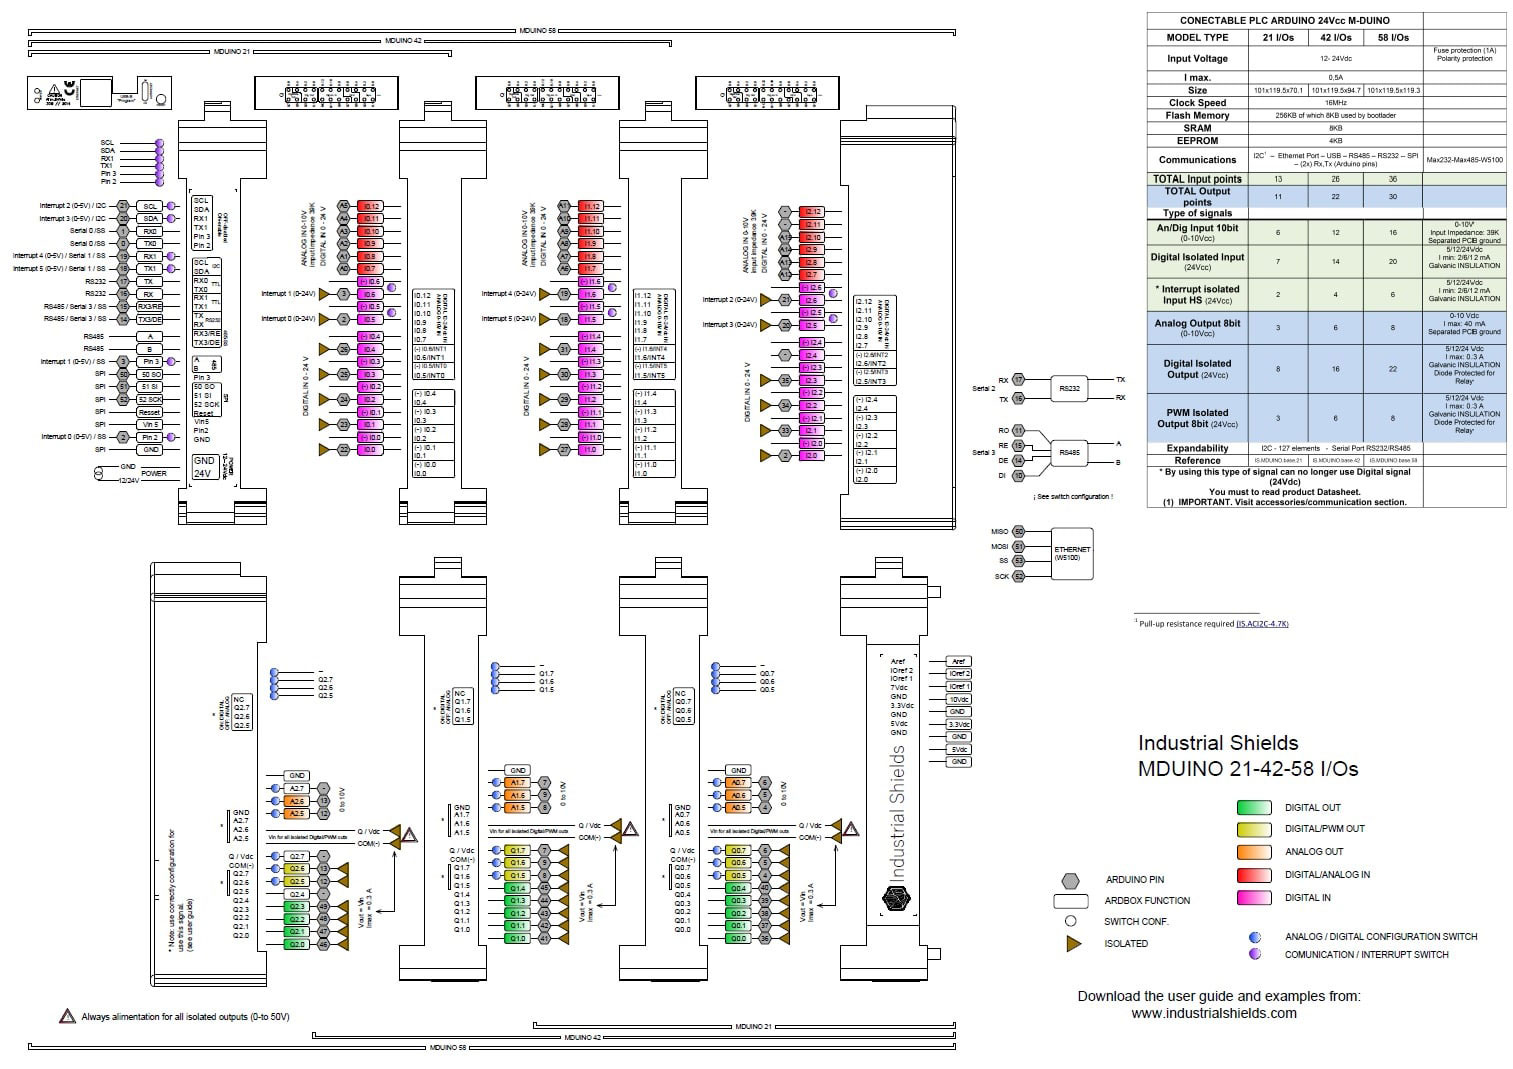 M-DUINO PLC 21 I/Os Analog/Digital PLUS Industrial Arduino Module - Zum Vergrößern klicken